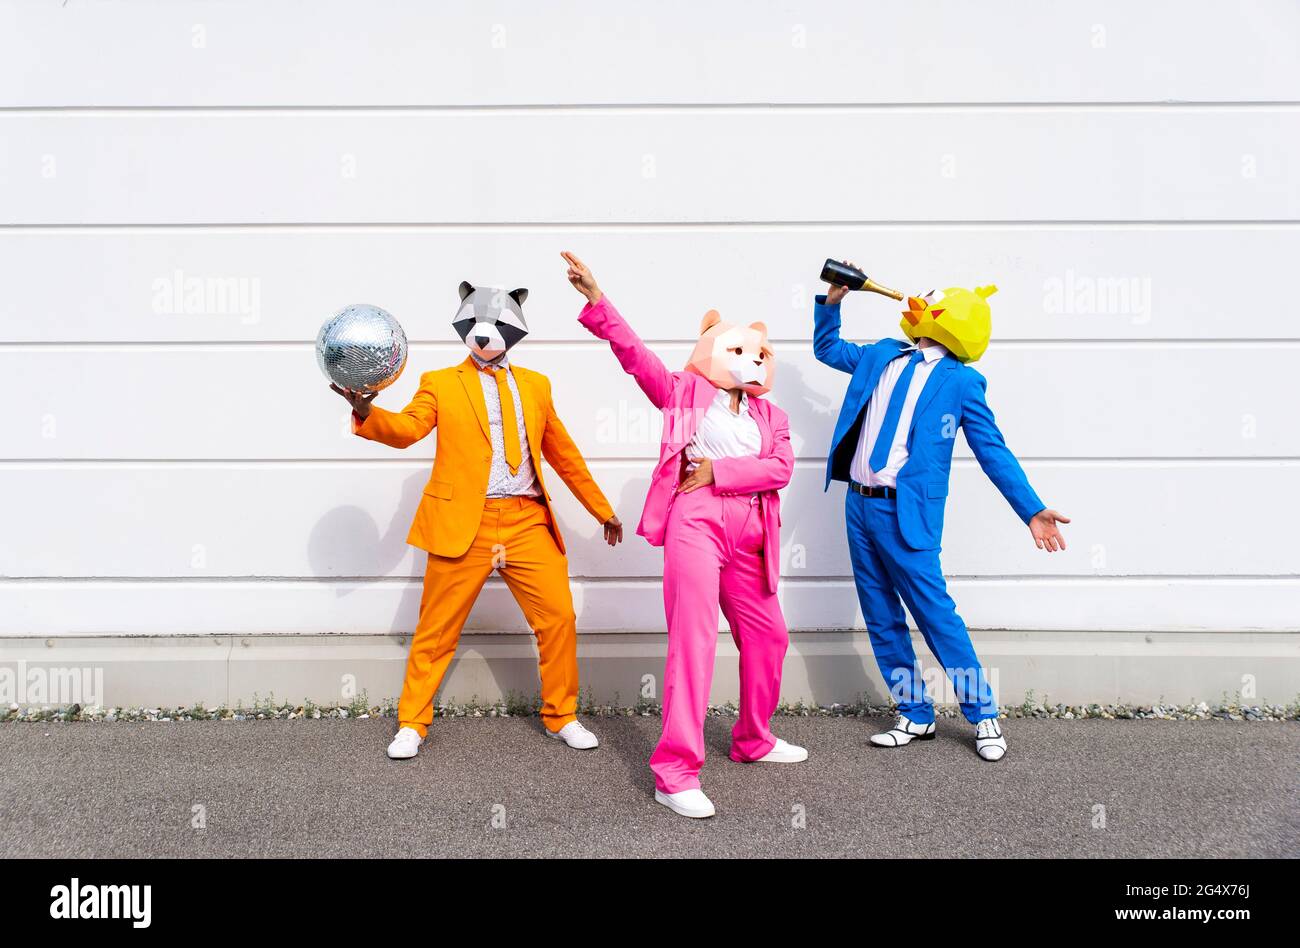 Trois personnes portant des costumes vibrants et des masques pour animaux faisant la fête devant le mur blanc Banque D'Images